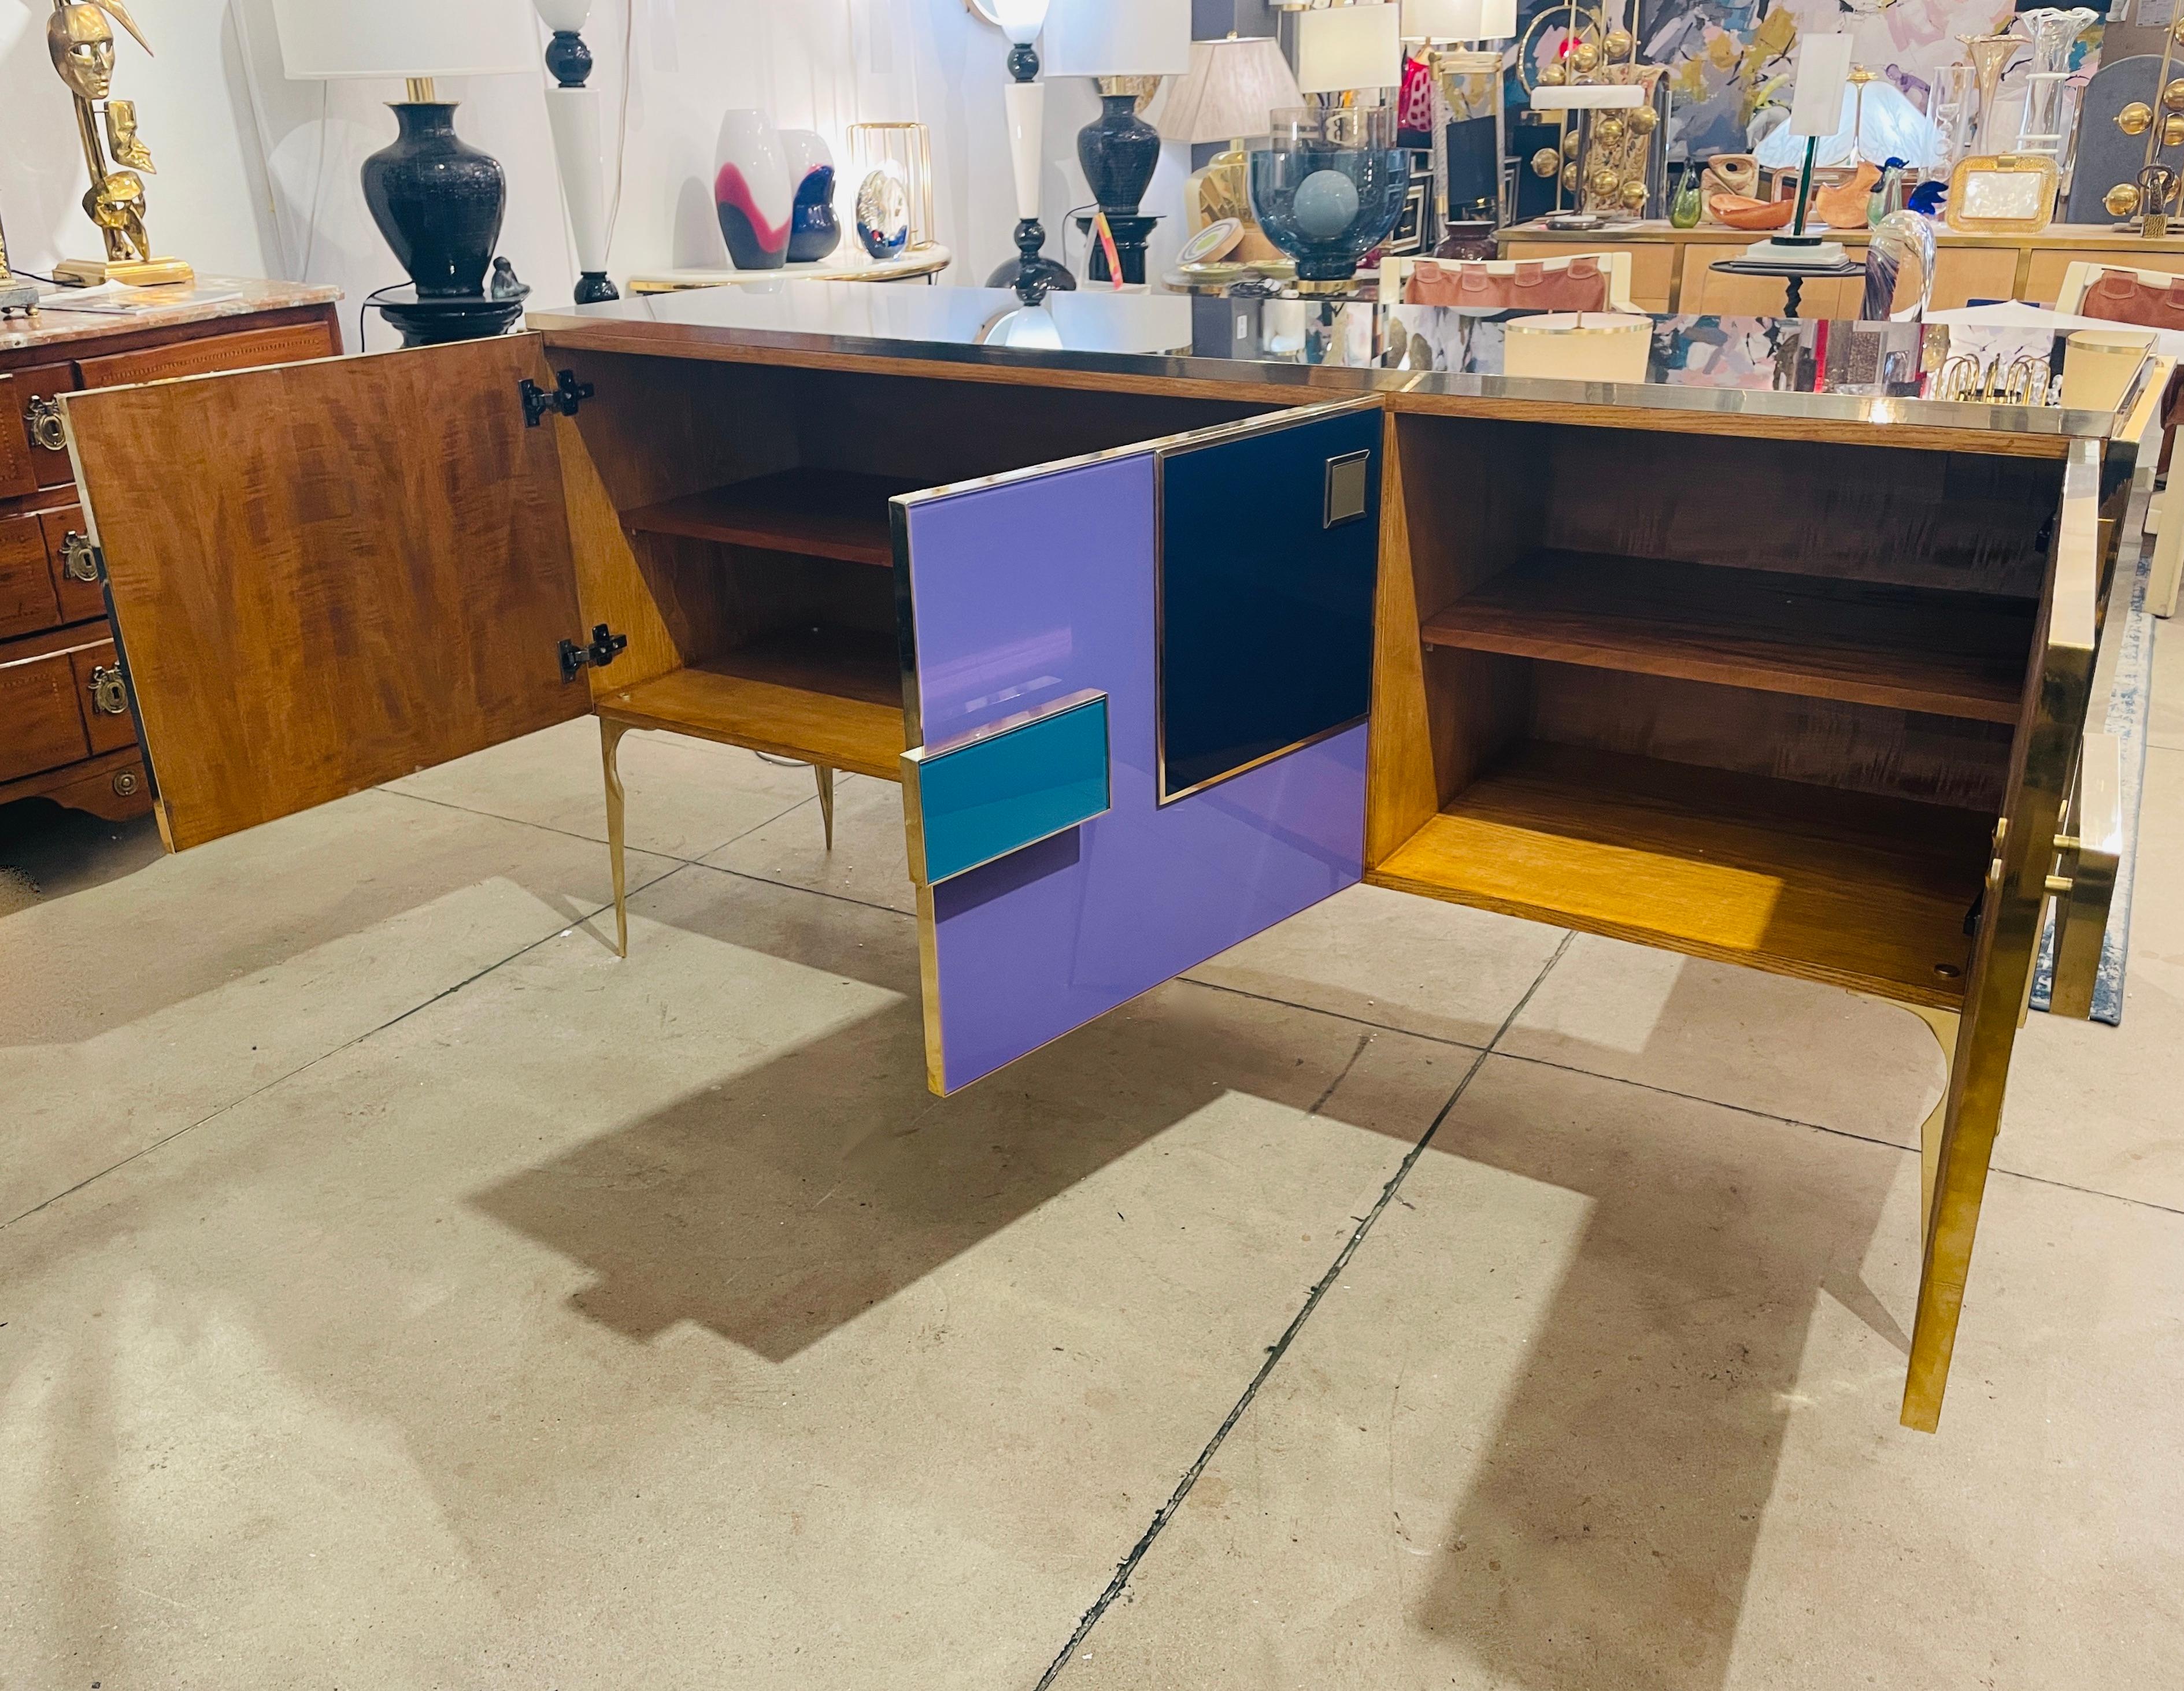 purple sideboard